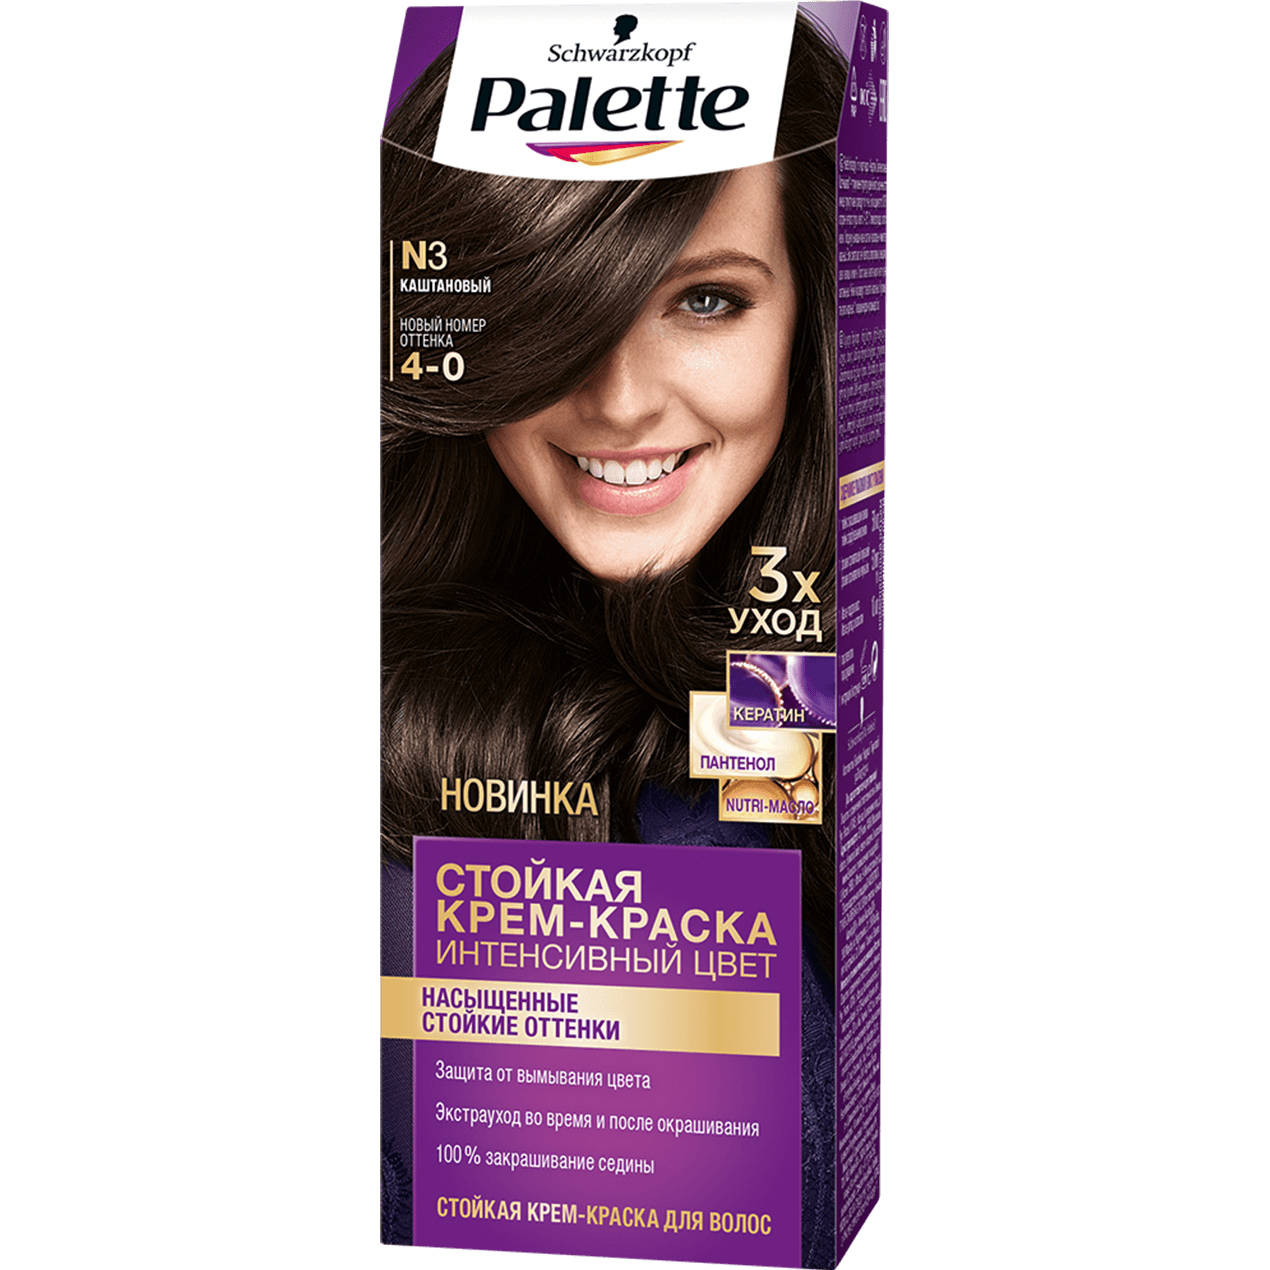 Крем-краска для волос Palette Интенсивный цвет 4-0, N3 Каштановый 110 мл краска для волос palette naturia 4 0 каштановый